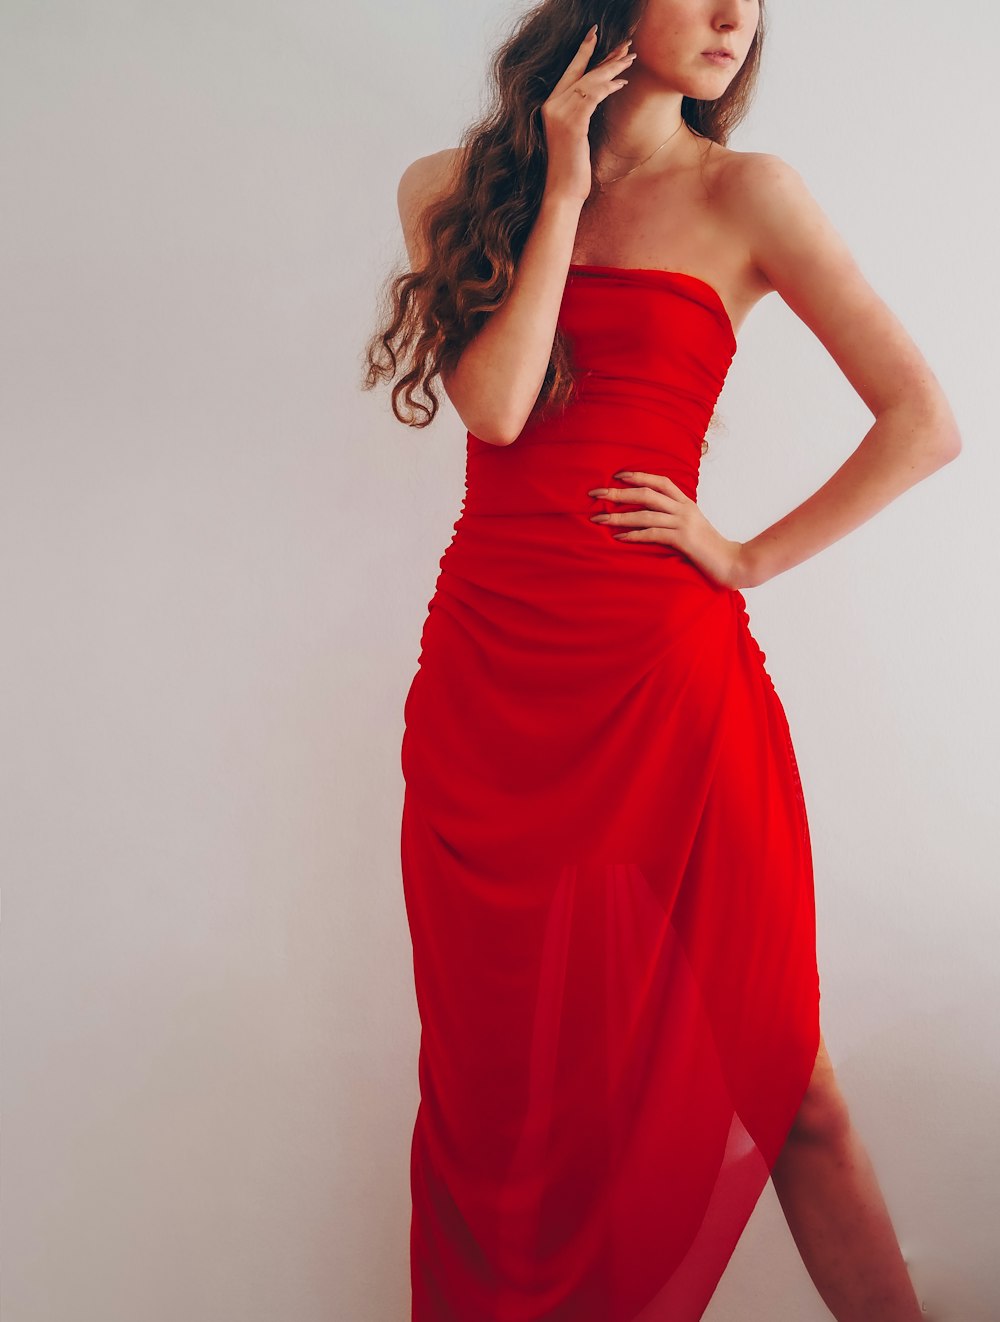 빨간 튜브 드레스를 입은 여자